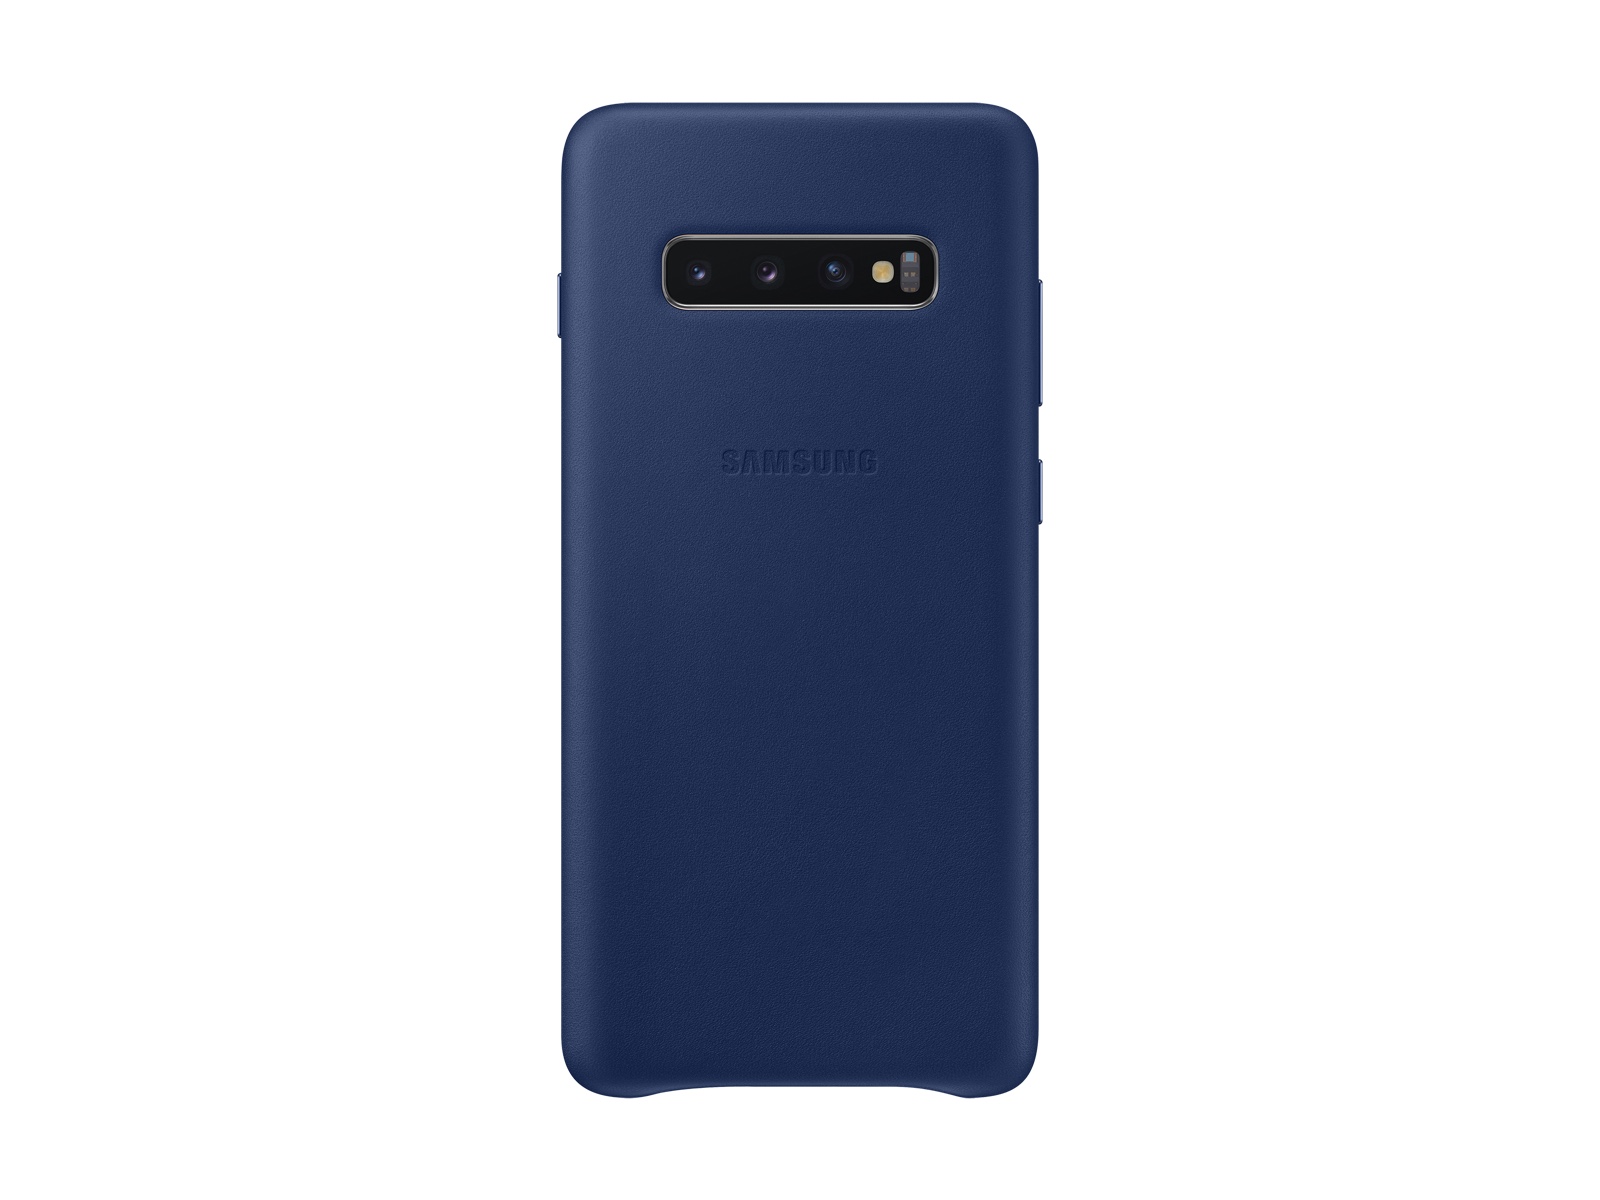 Funda trasera de piel para Galaxy S10+, accesorios para en azul - EF-VG975LNEGUS | Samsung